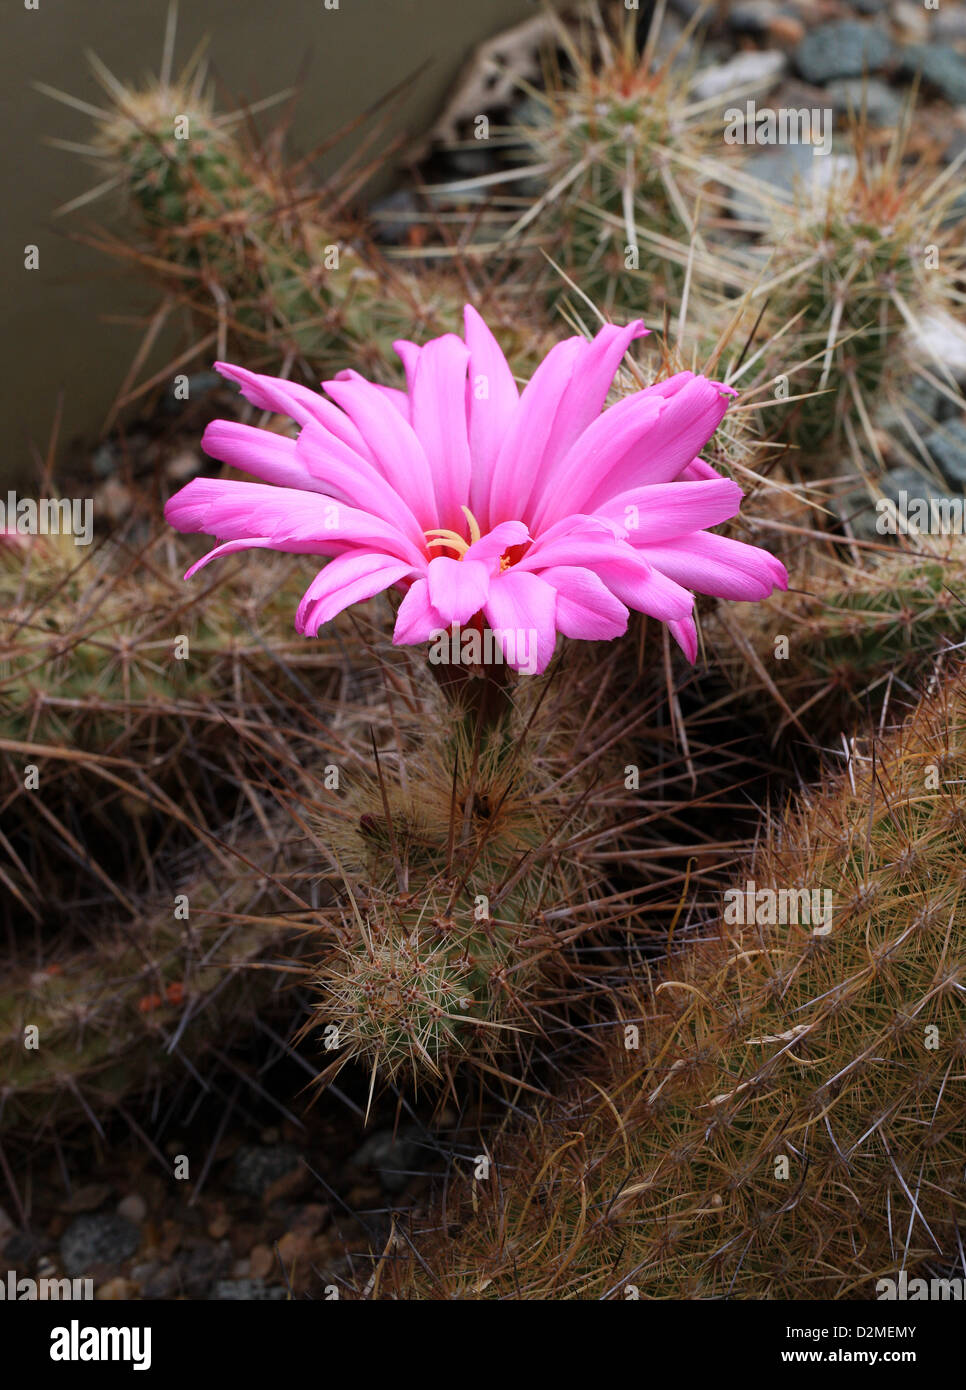 Cactus, Echinocereus brandegeei, Cactaceae. North West Mexico. Stock Photo